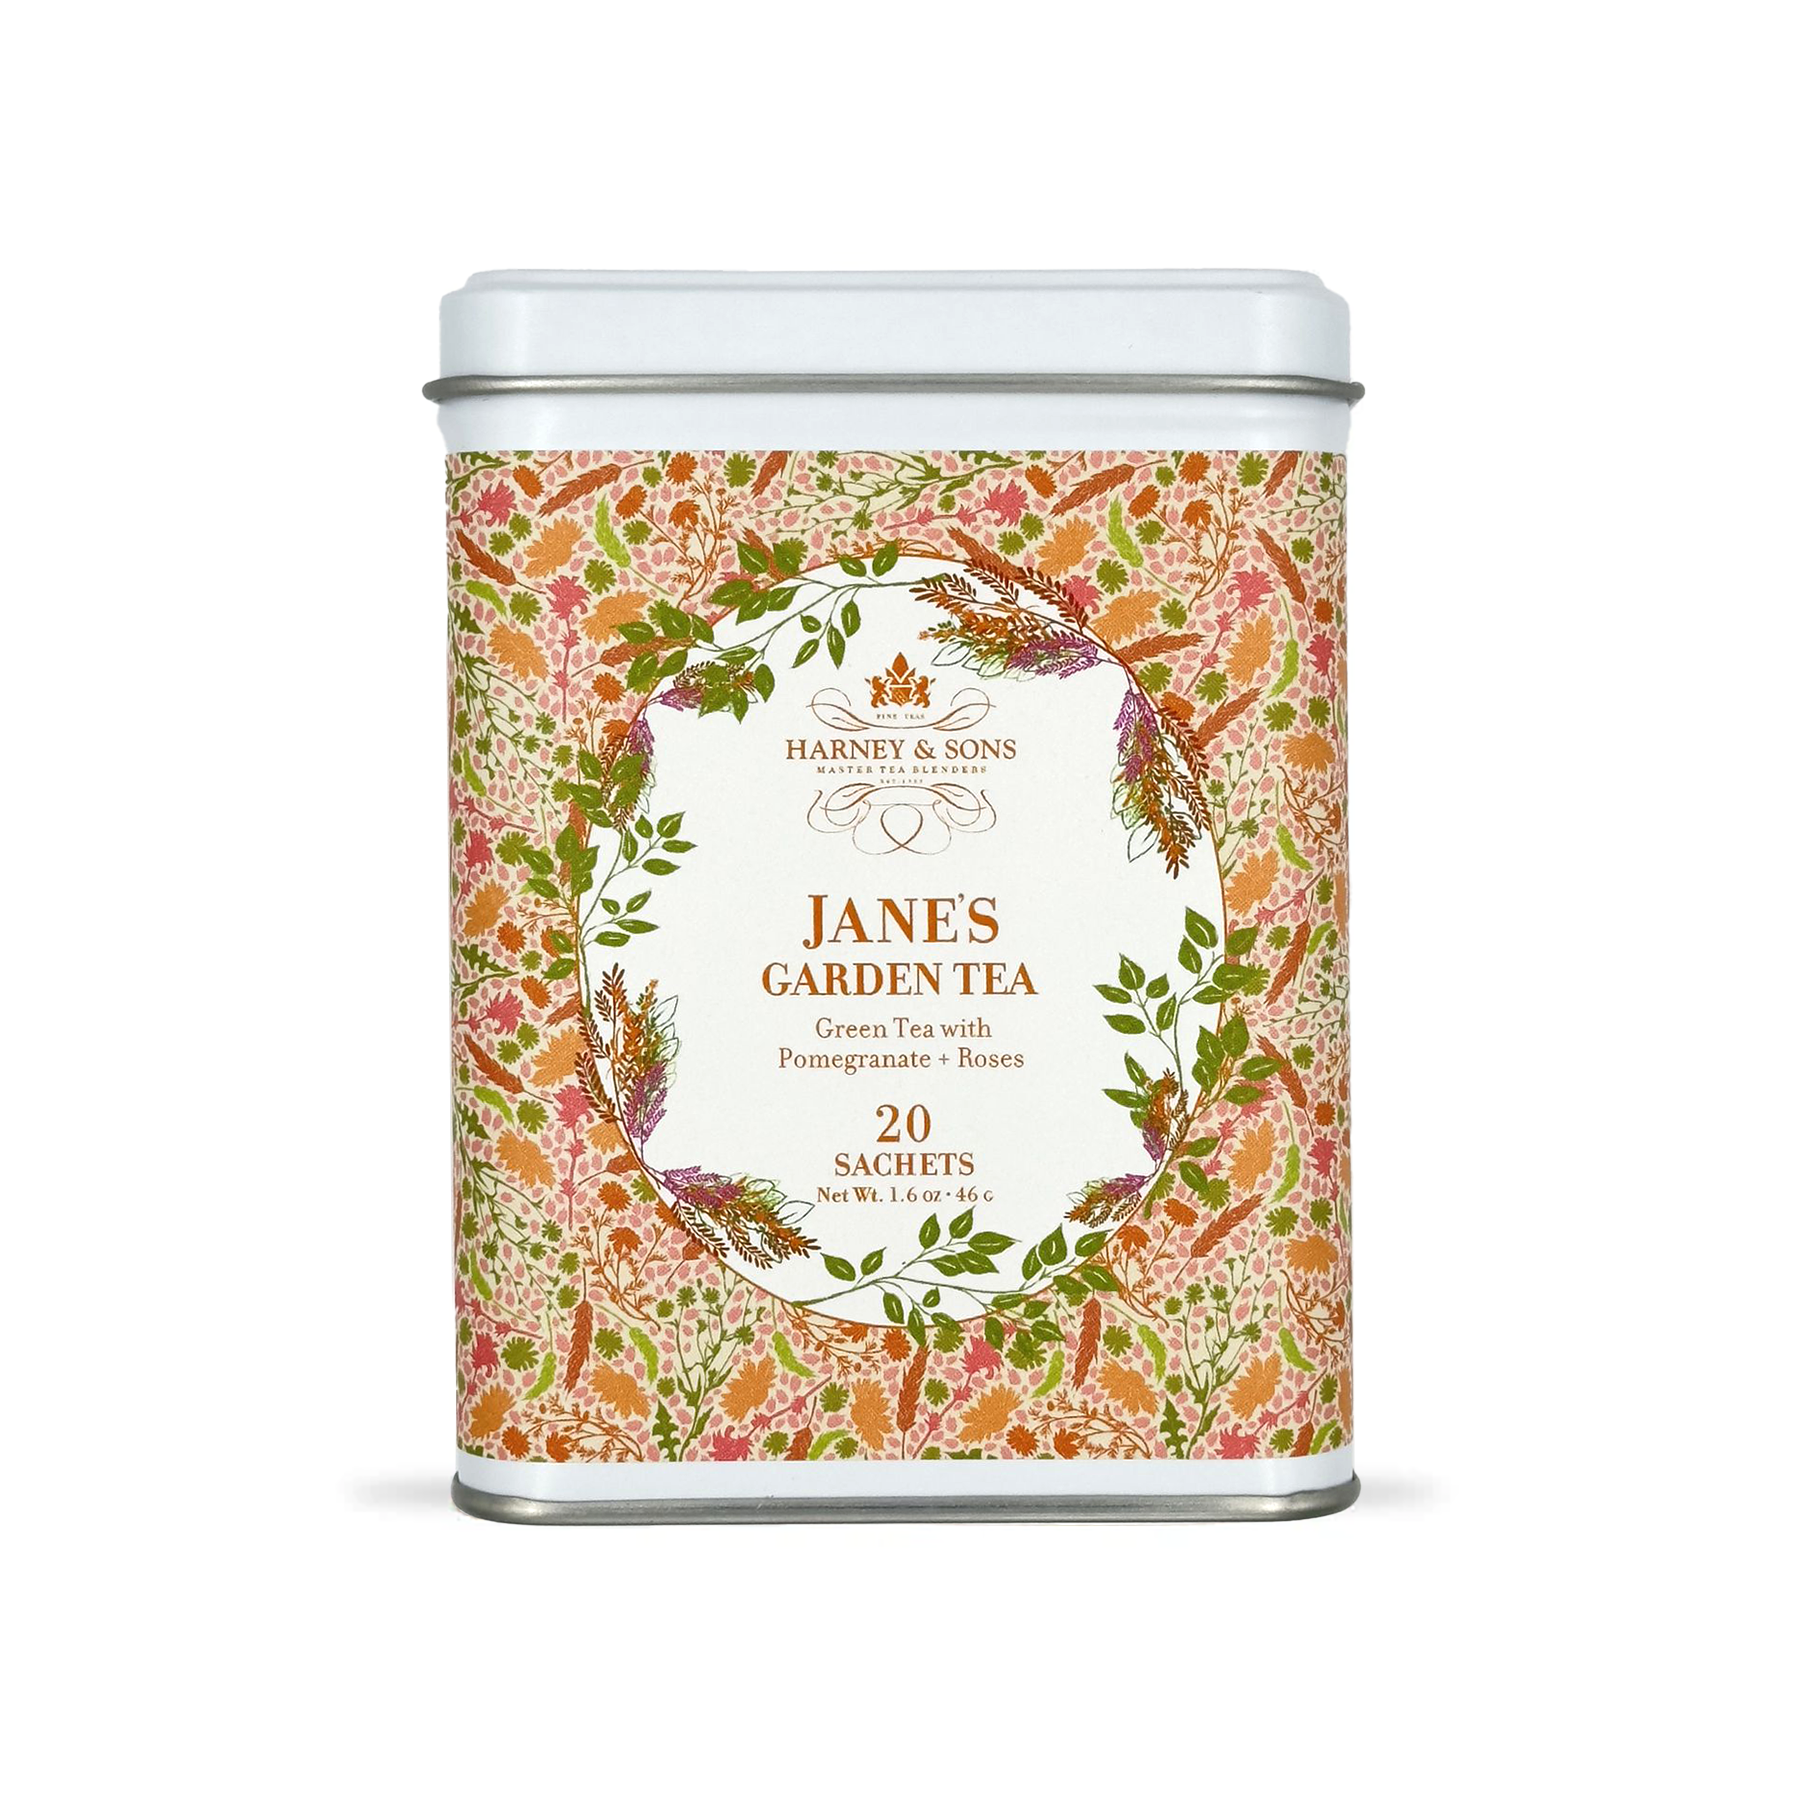 Jane's Garden Tea, Tin of 20 Sachets